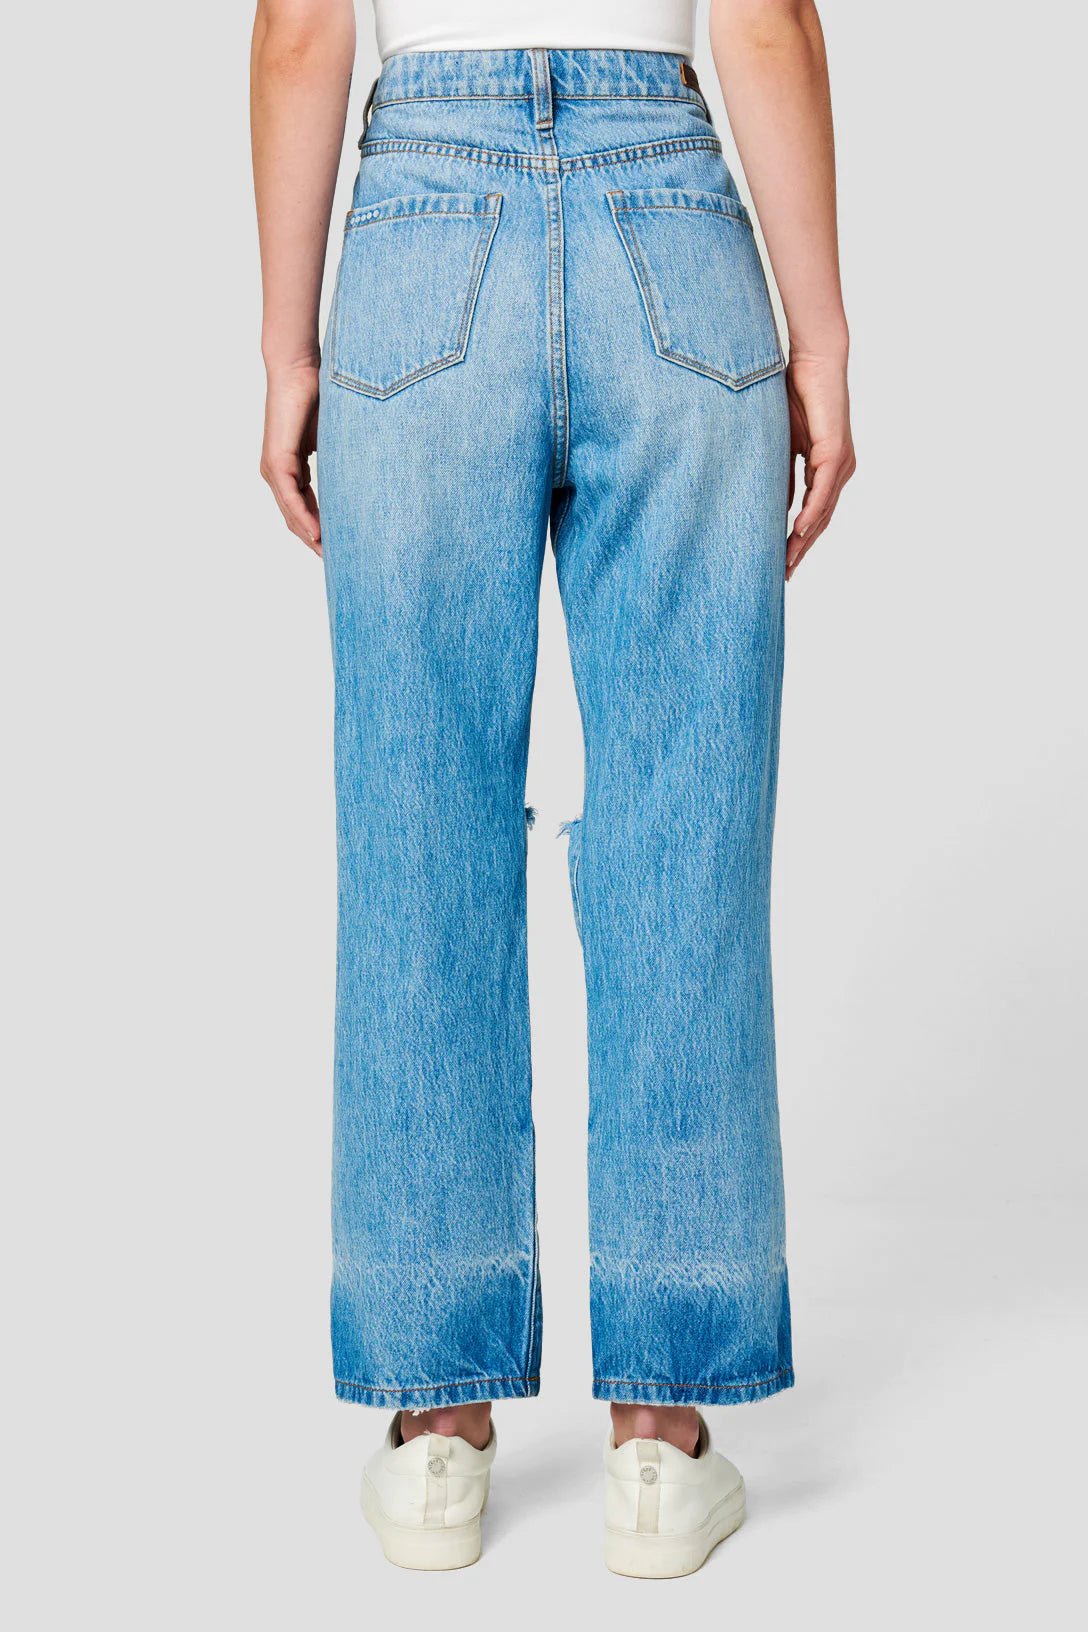 BlankNYC Baxter in Personal BestDenim Jeans